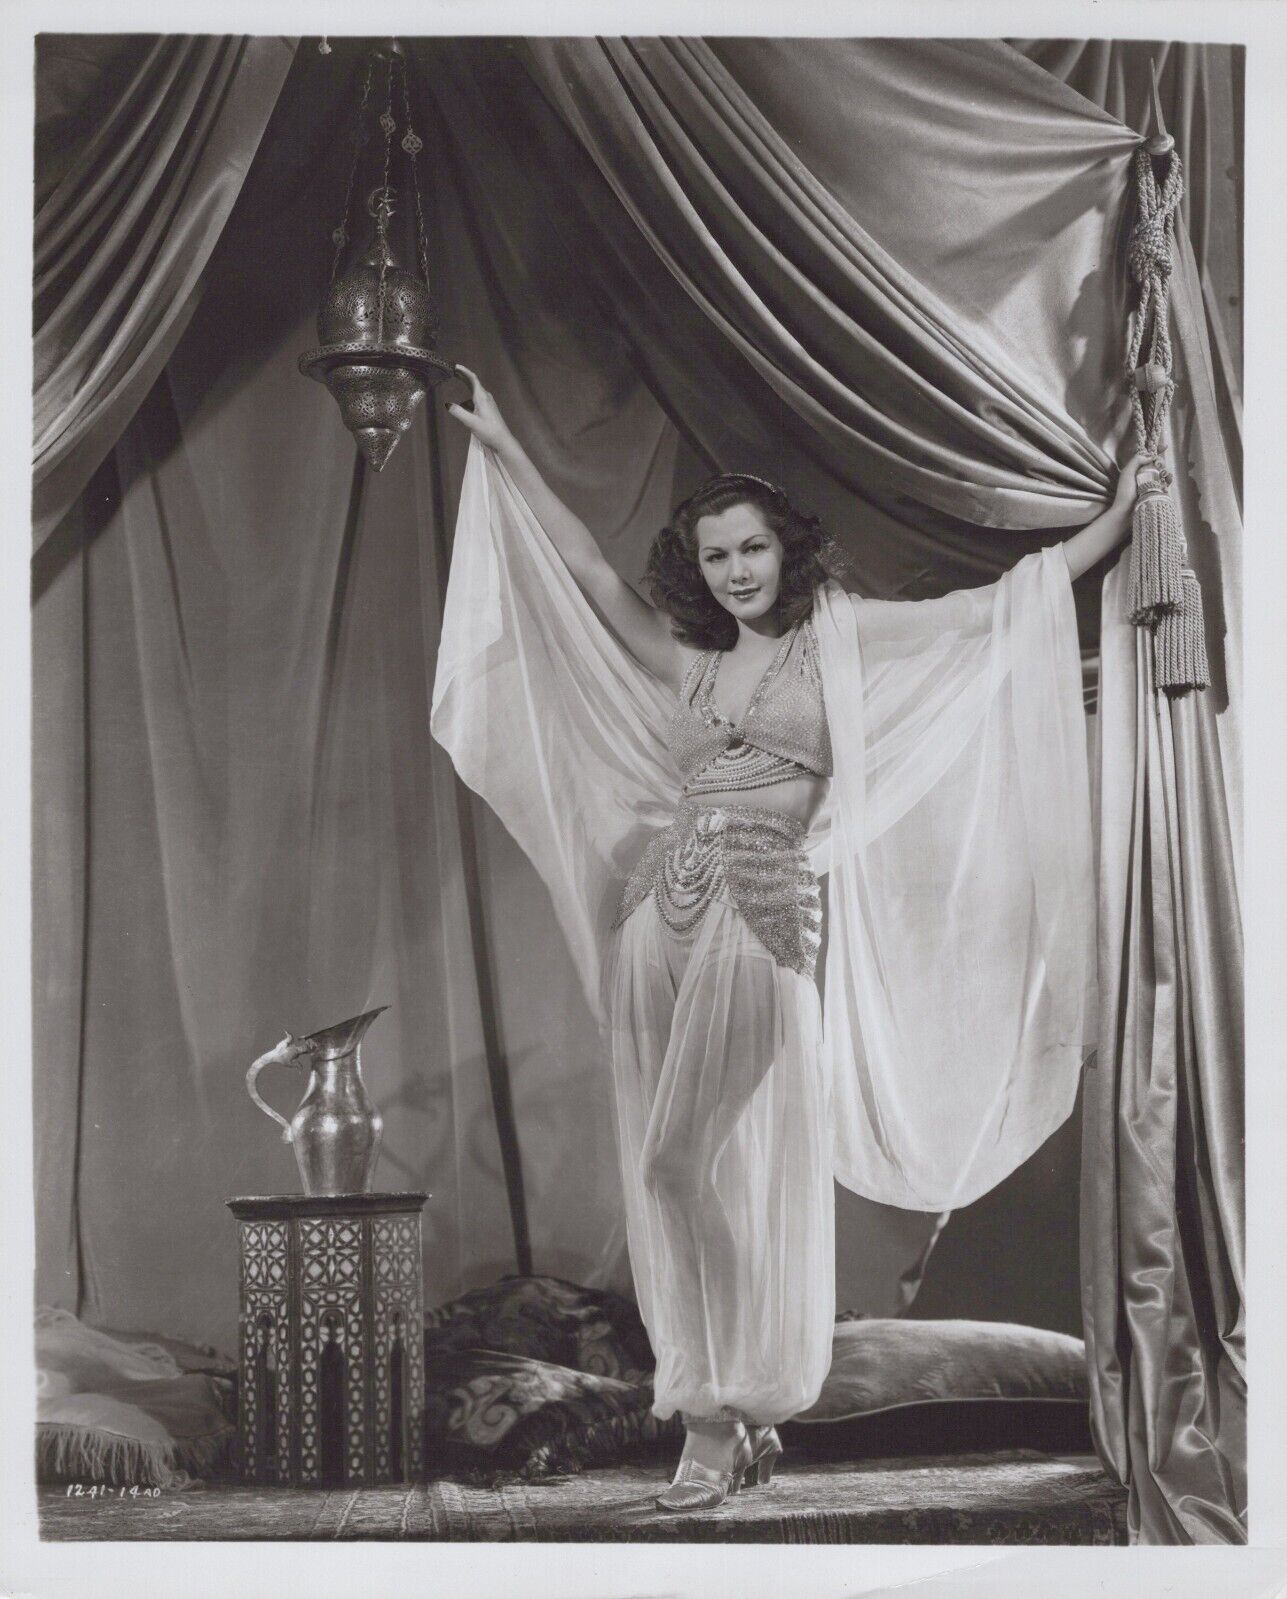 Maria Montez (1940s) ❤ Hollywood Beauty Stylish Glamorous Vintage Photo K 520